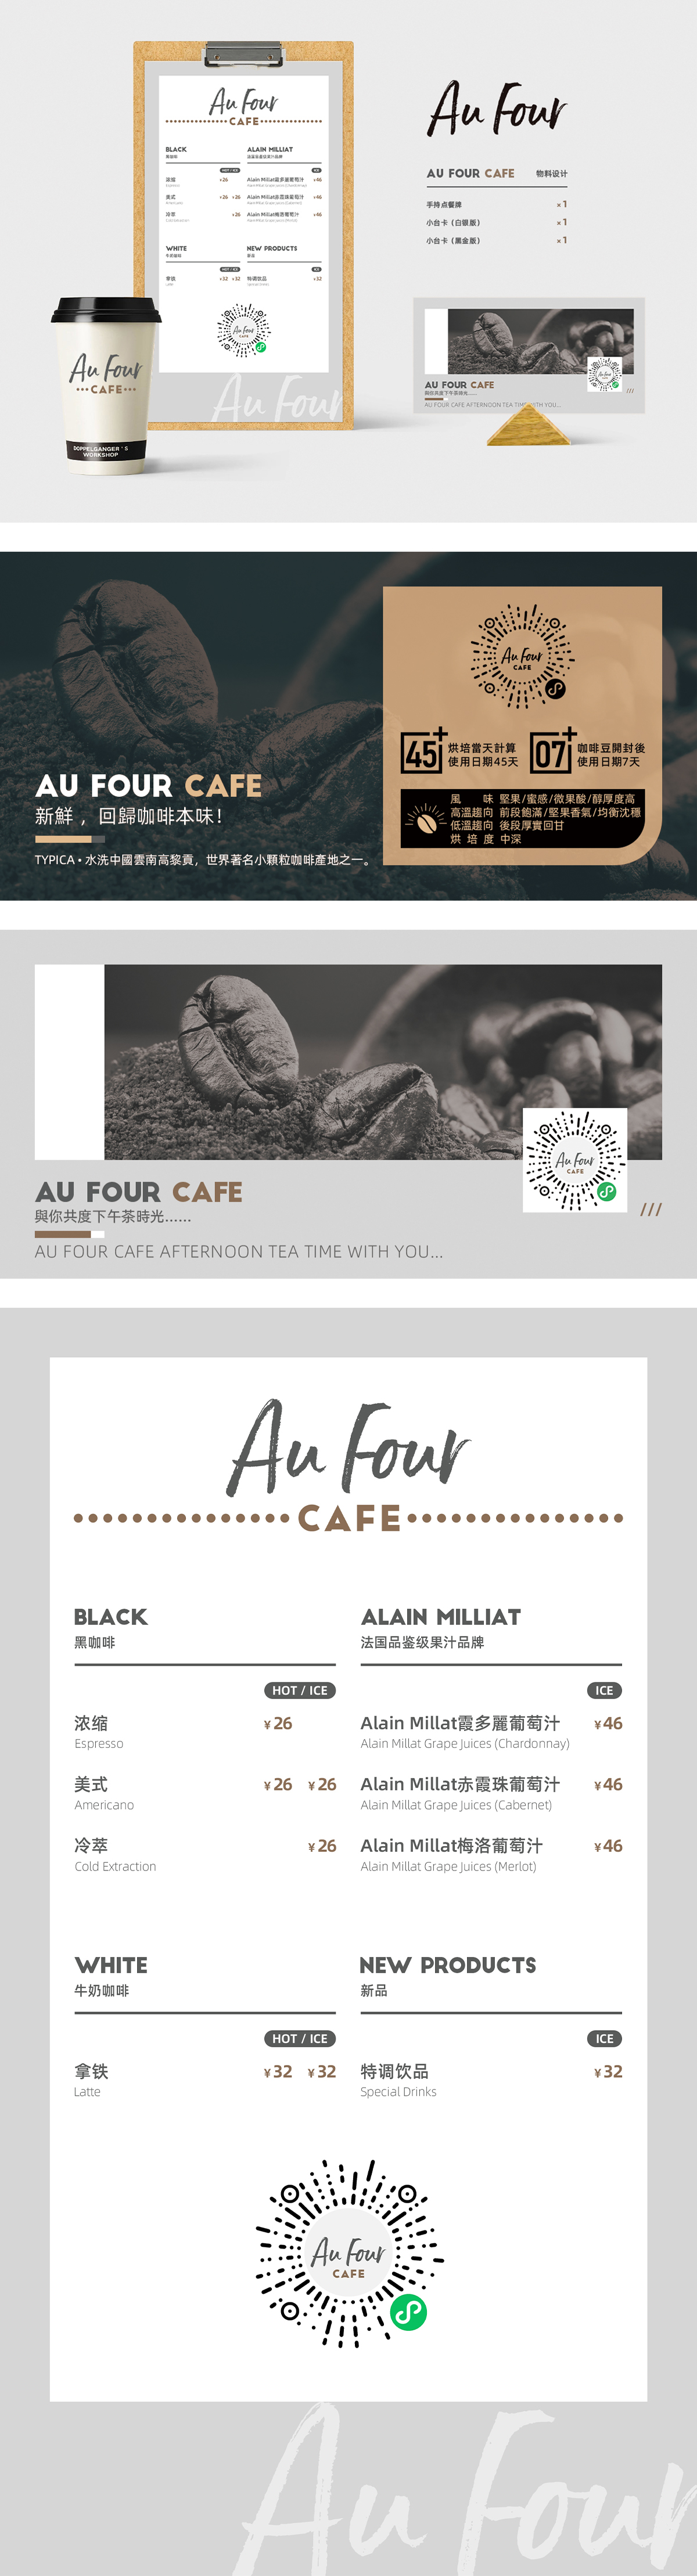 Au Four Cafe内容